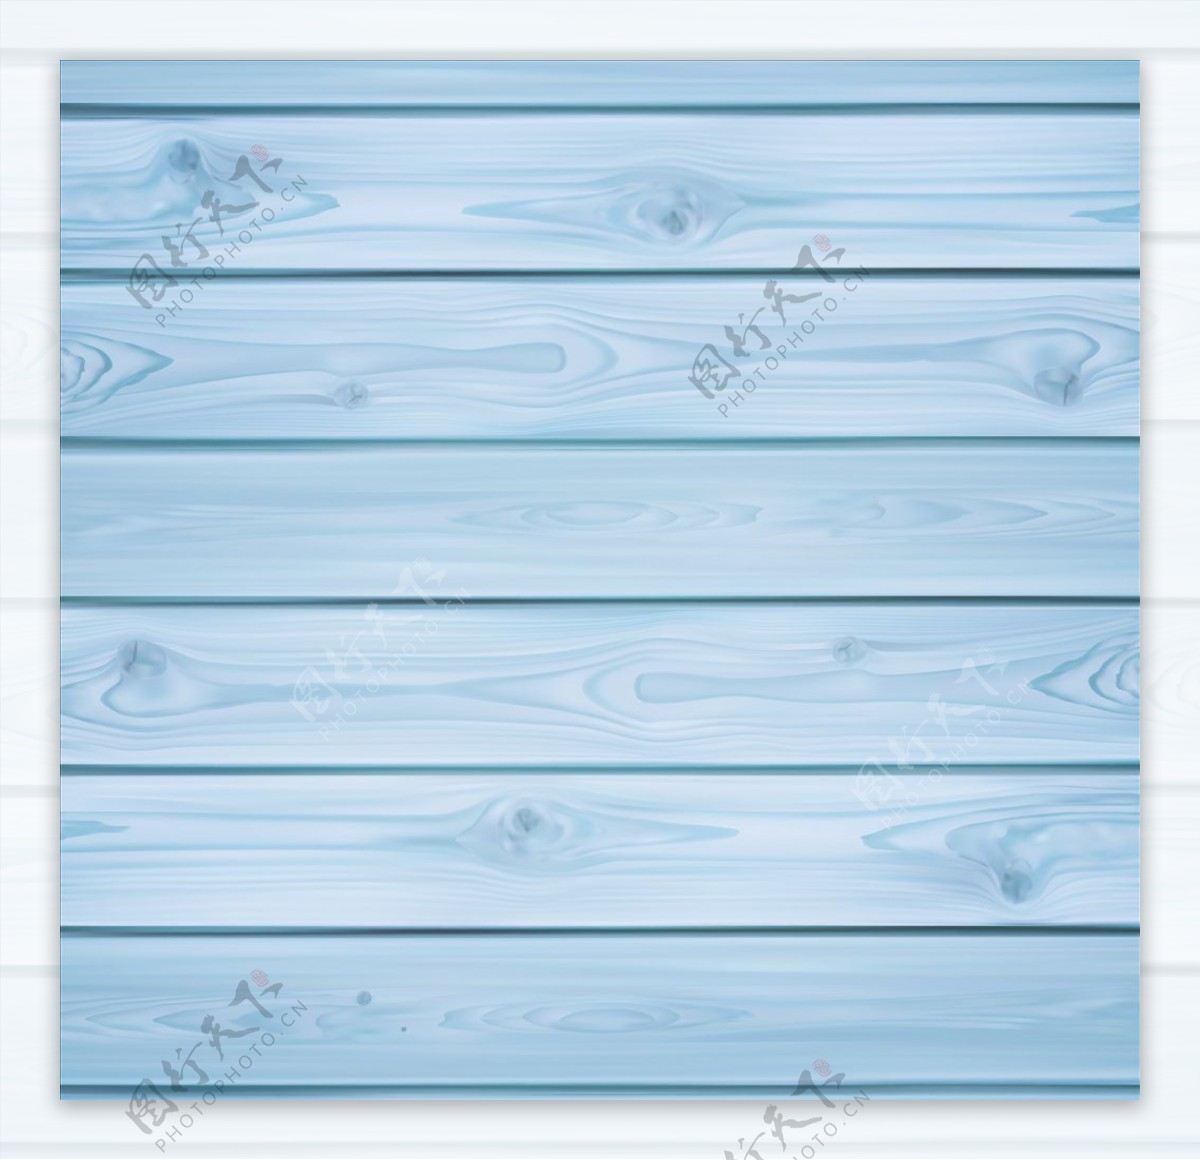 蓝色木板背景